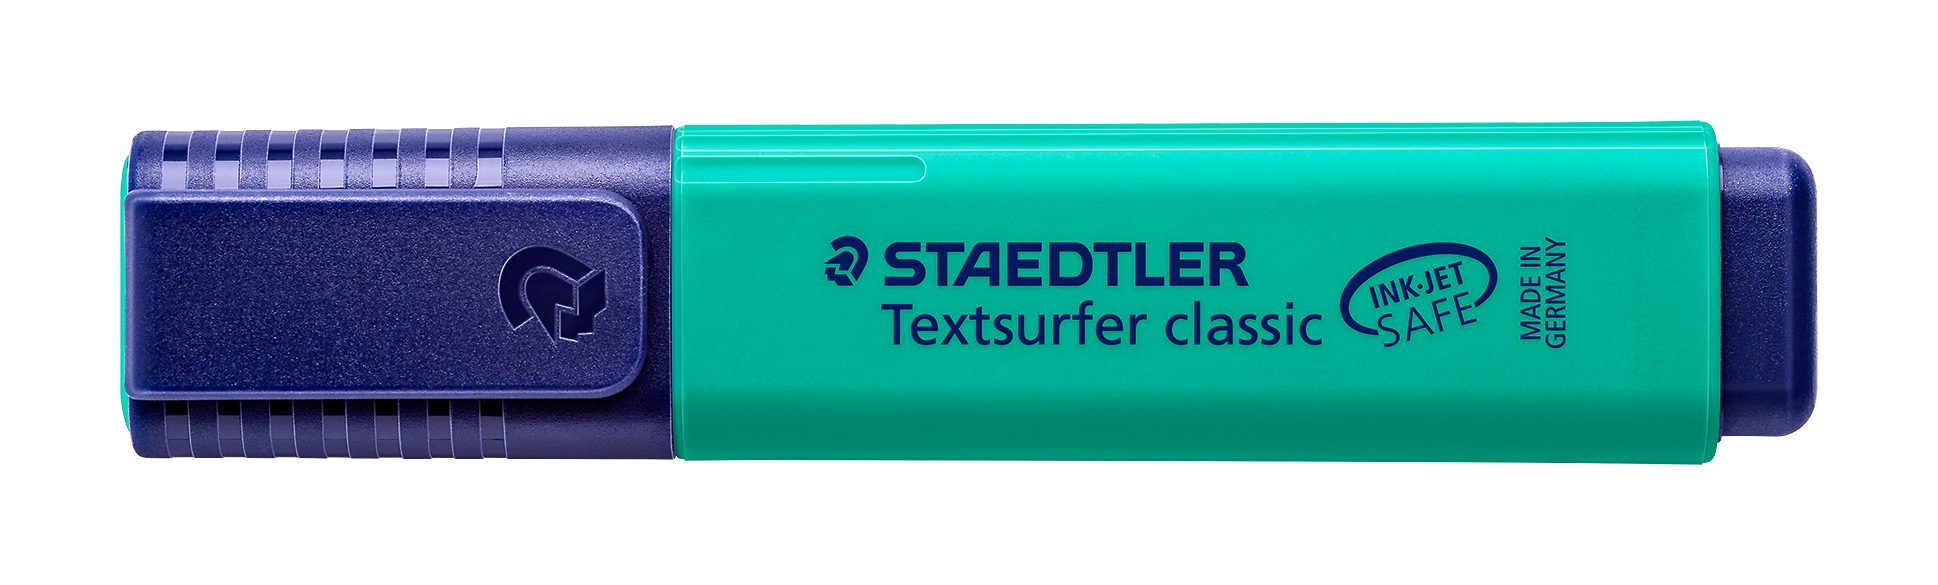 STAEDTLER Marker Staedtler Textsurfer SAFE 364-35 INK türkis classic Leuchtstift, JET